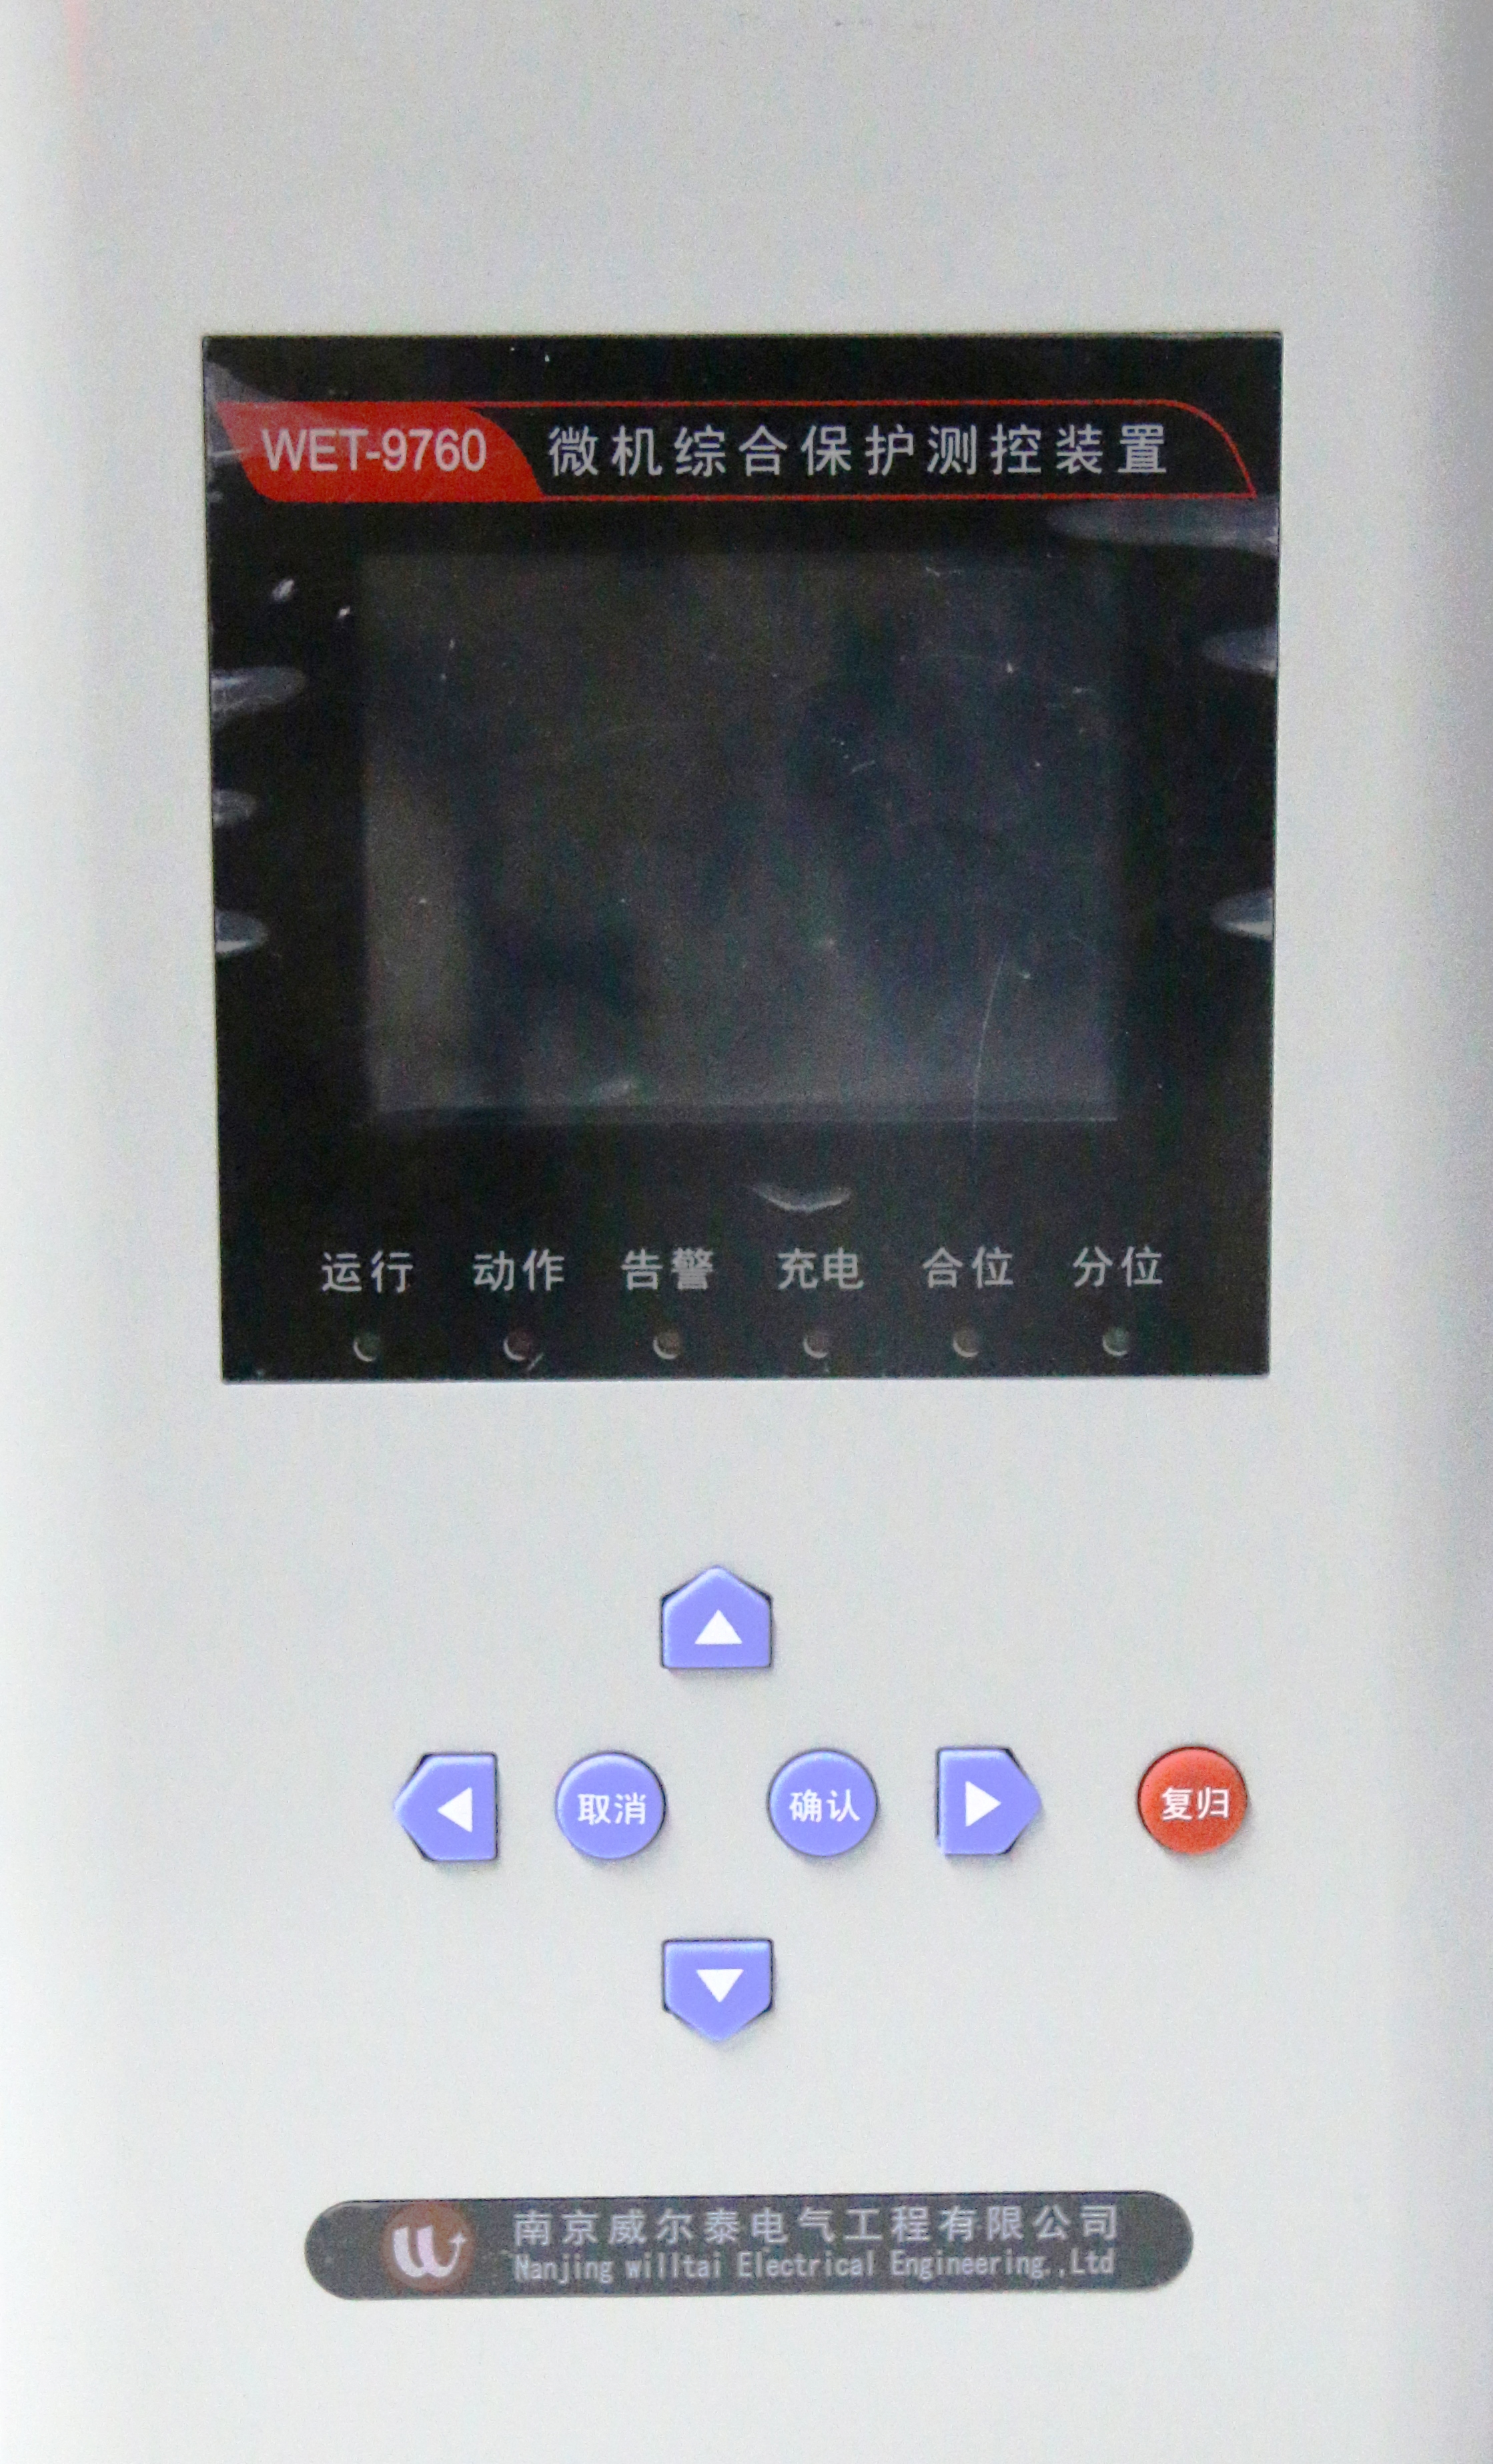 WET-9760系列微機綜合保護測控裝置